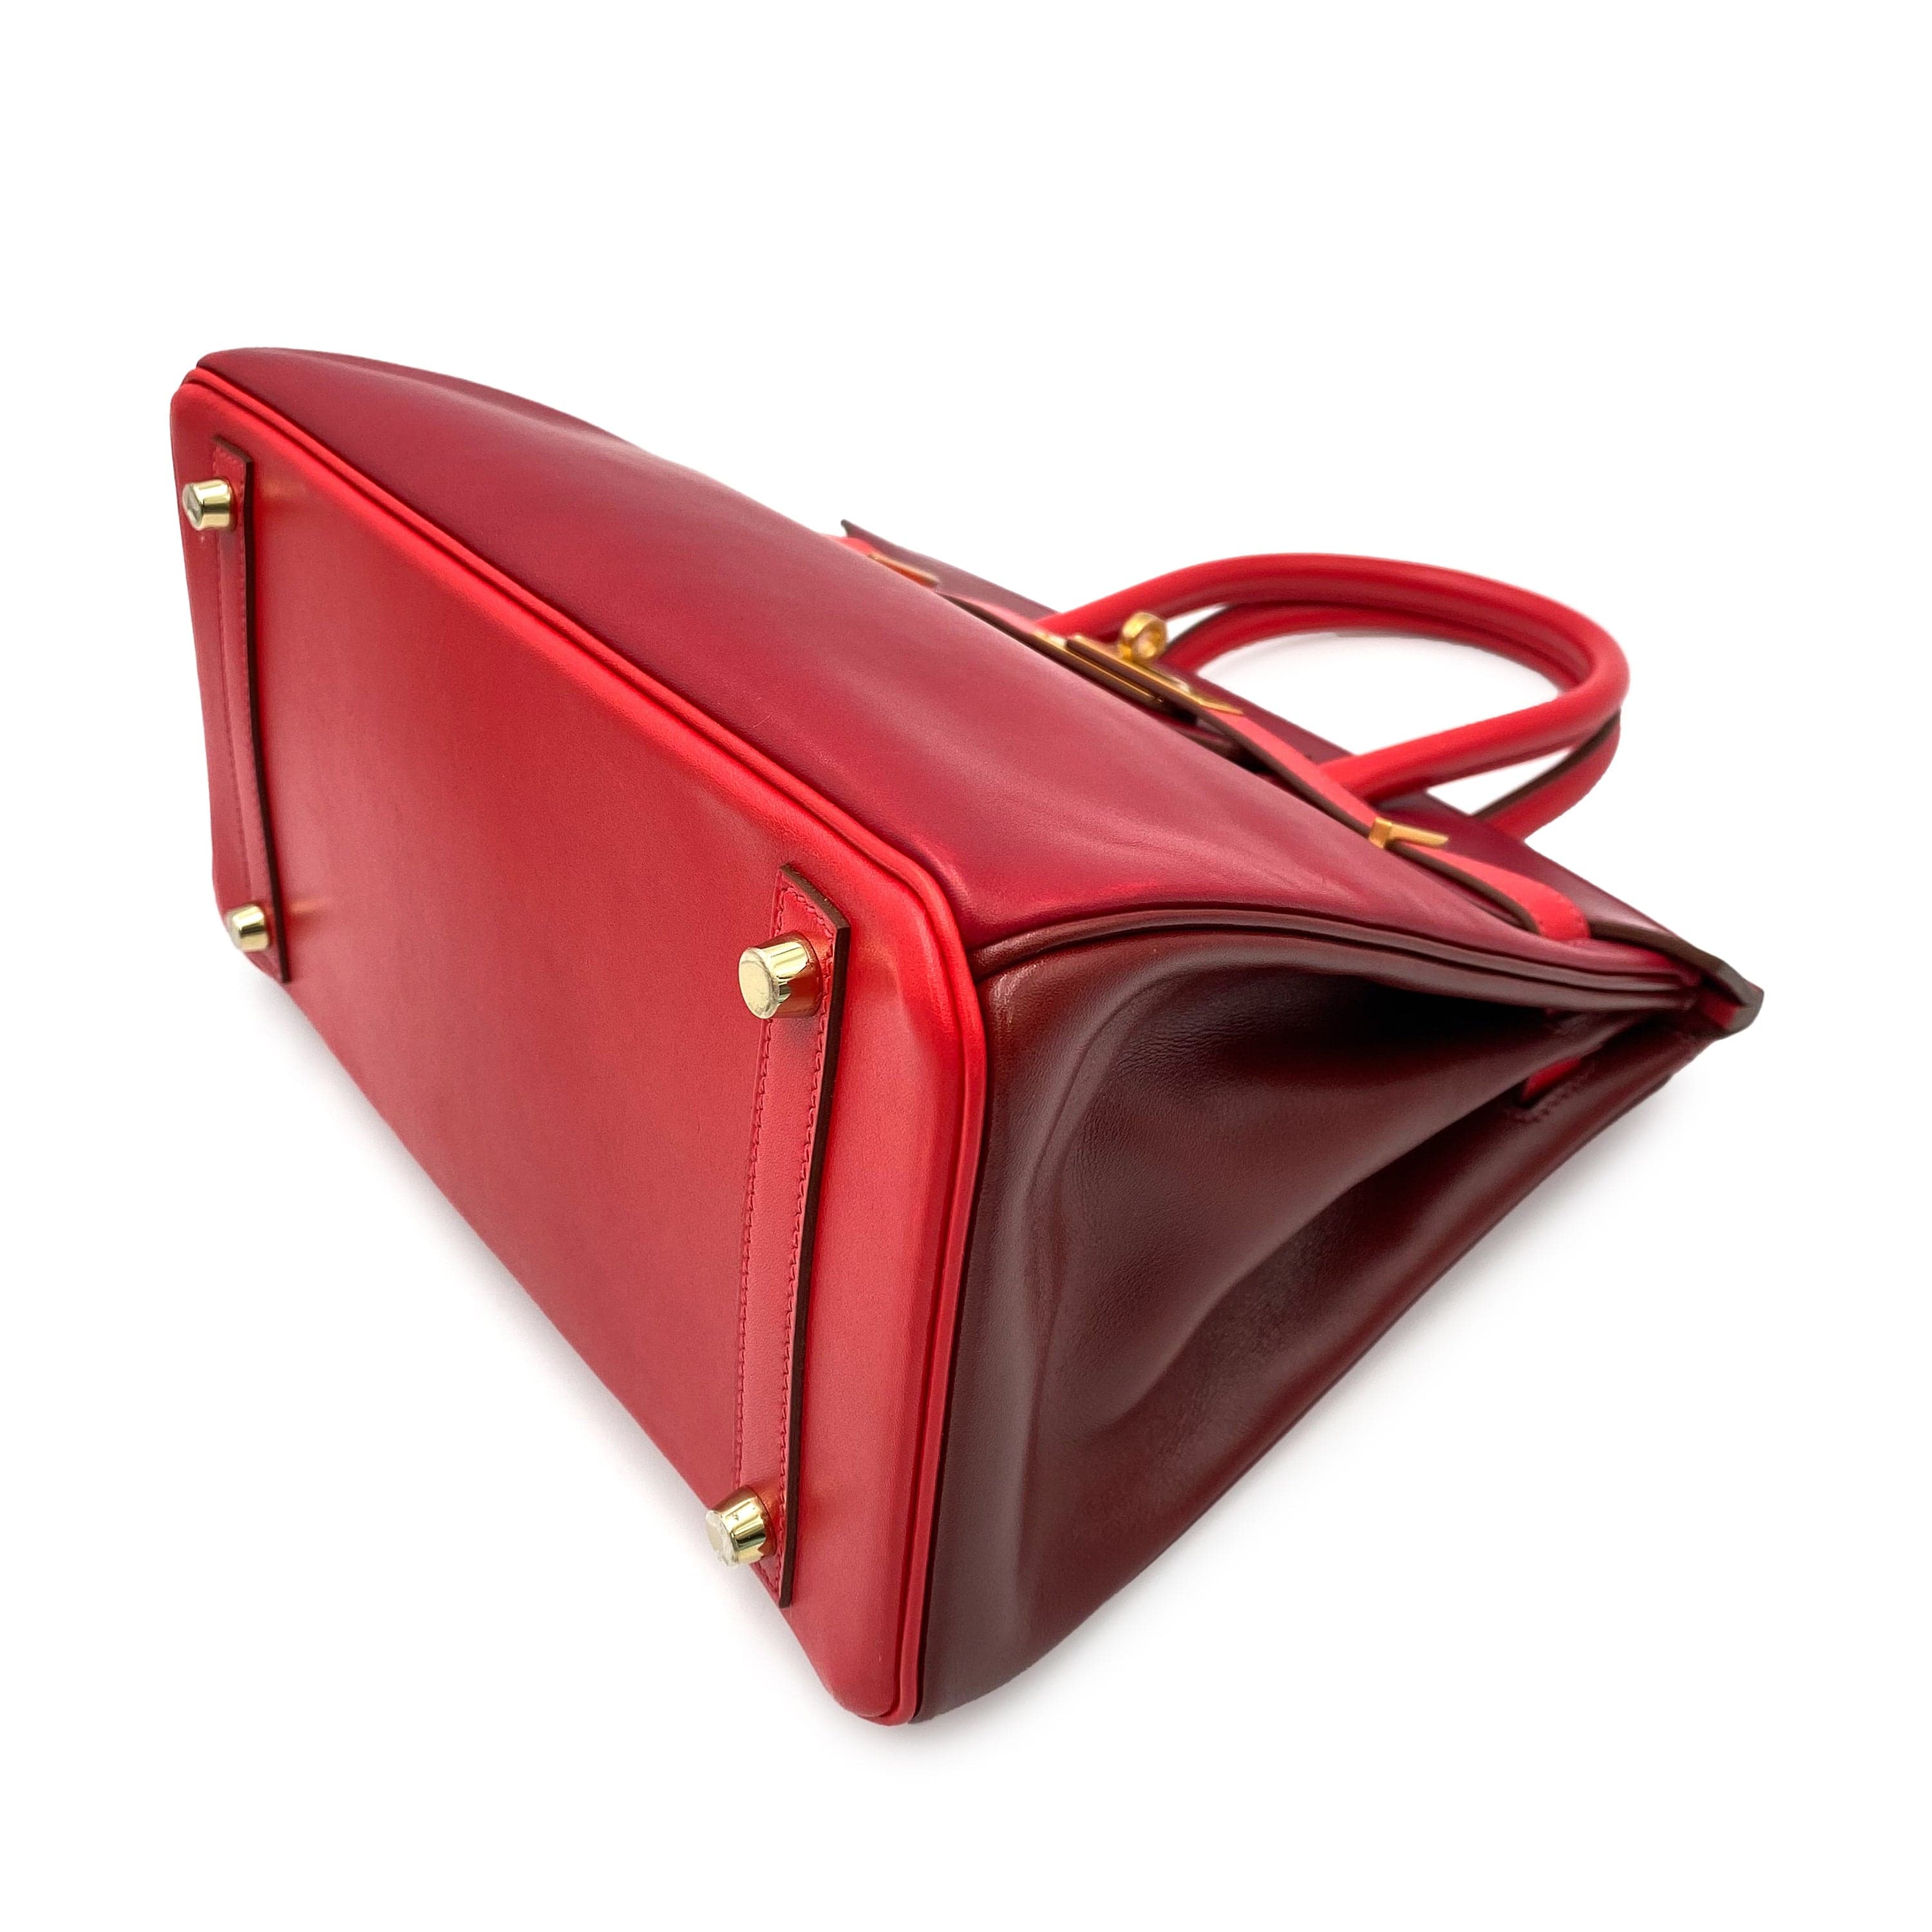 Hermès Hermes Birkin 30 Quad-Colour Rouge Tadelakt GHW #P